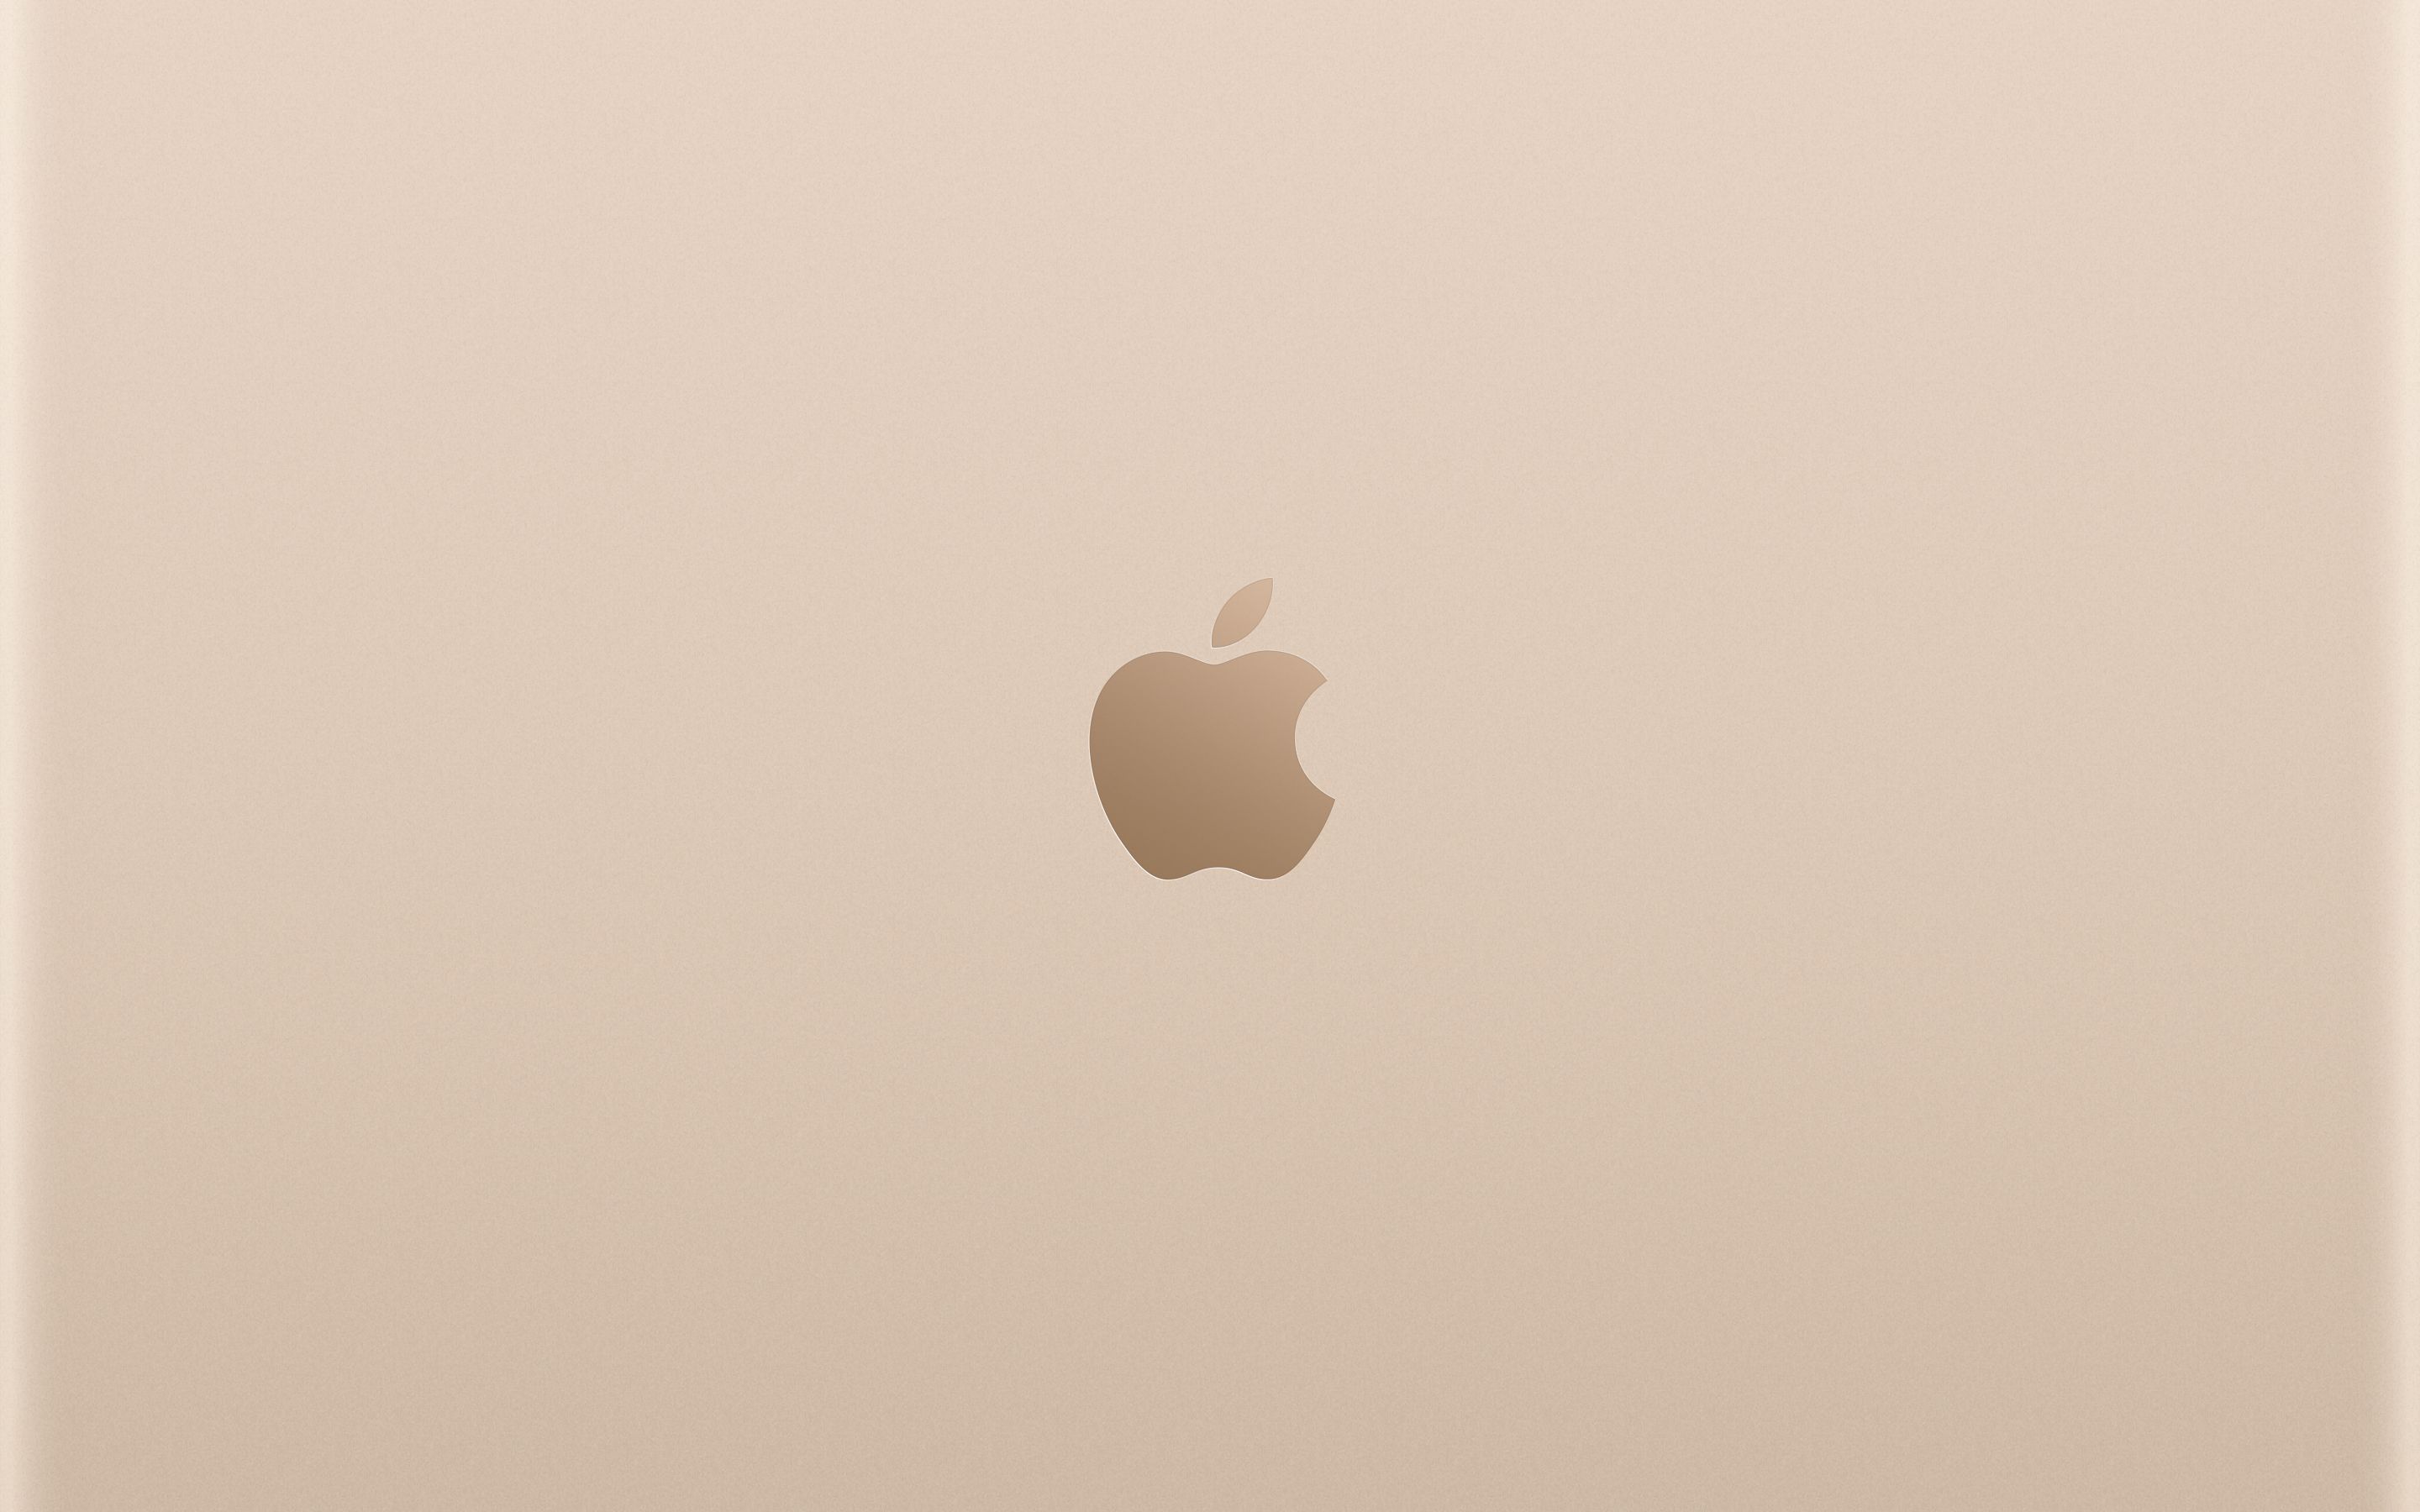 New Macbook wallpaper for iPad, iPhone, and Desktop